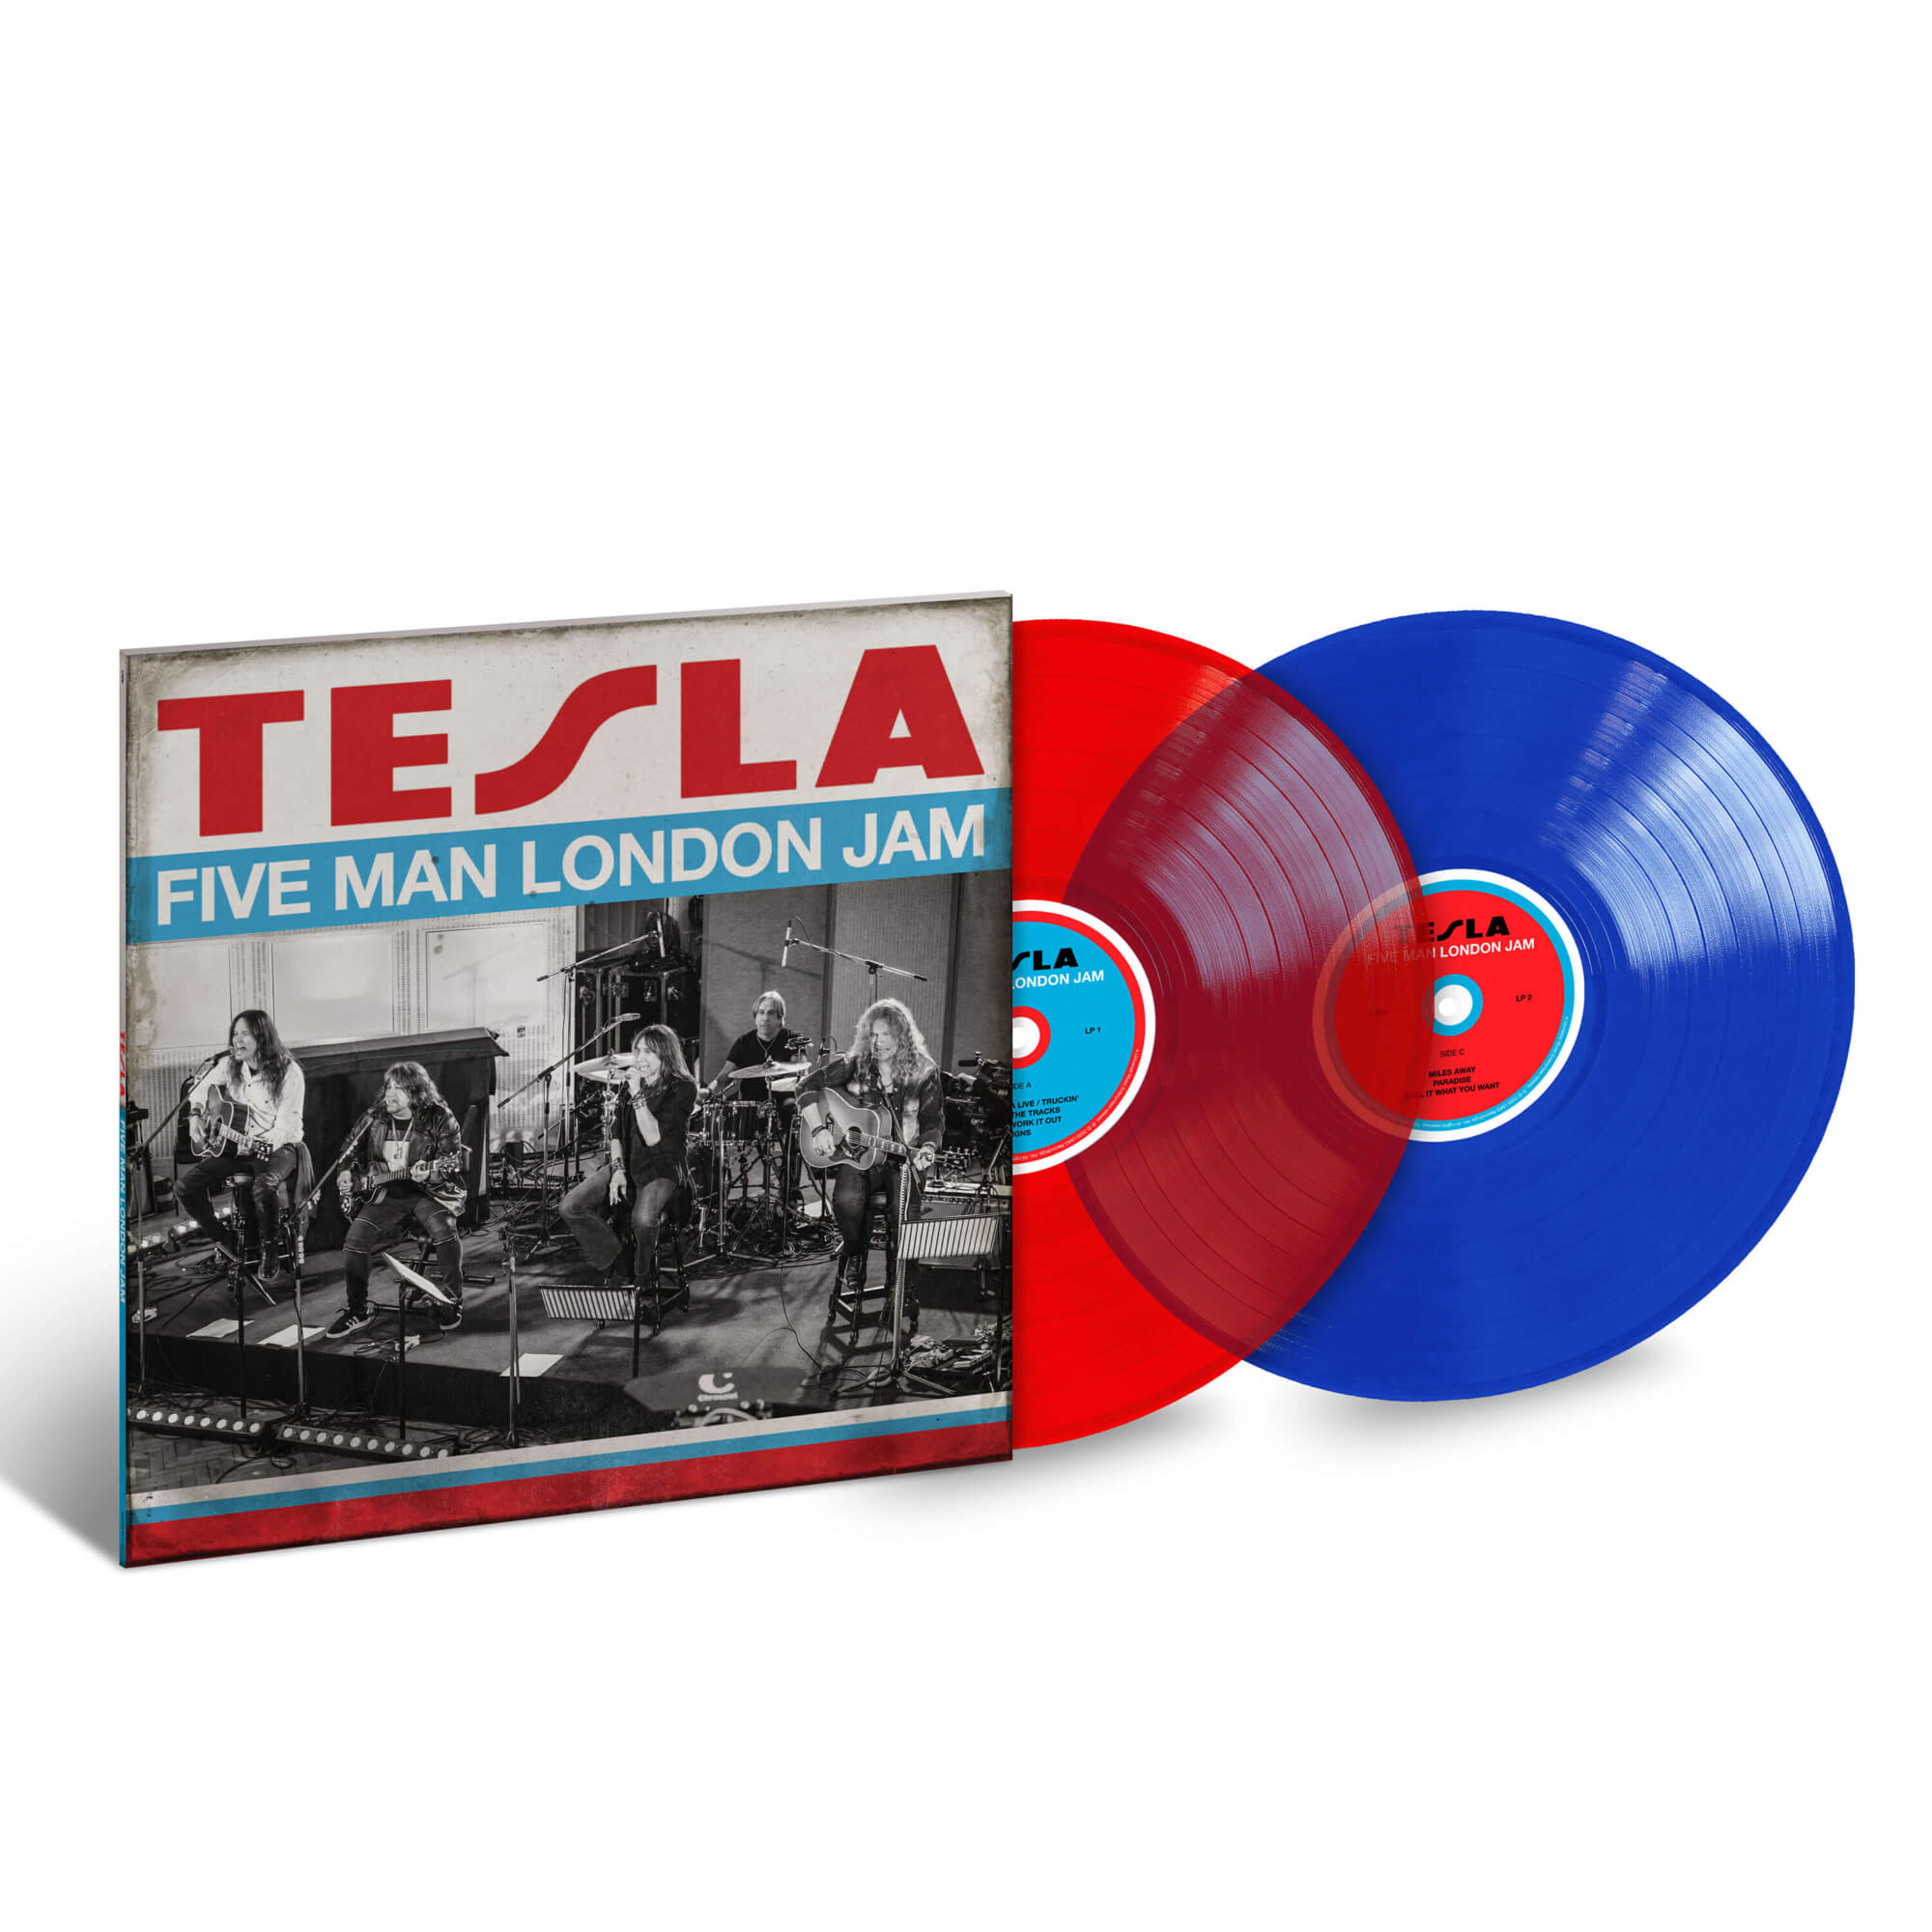 uDiscover Germany - Official Store - Five Man London Jam (Ltd. Coloured LP)  - Tesla - Vinyl